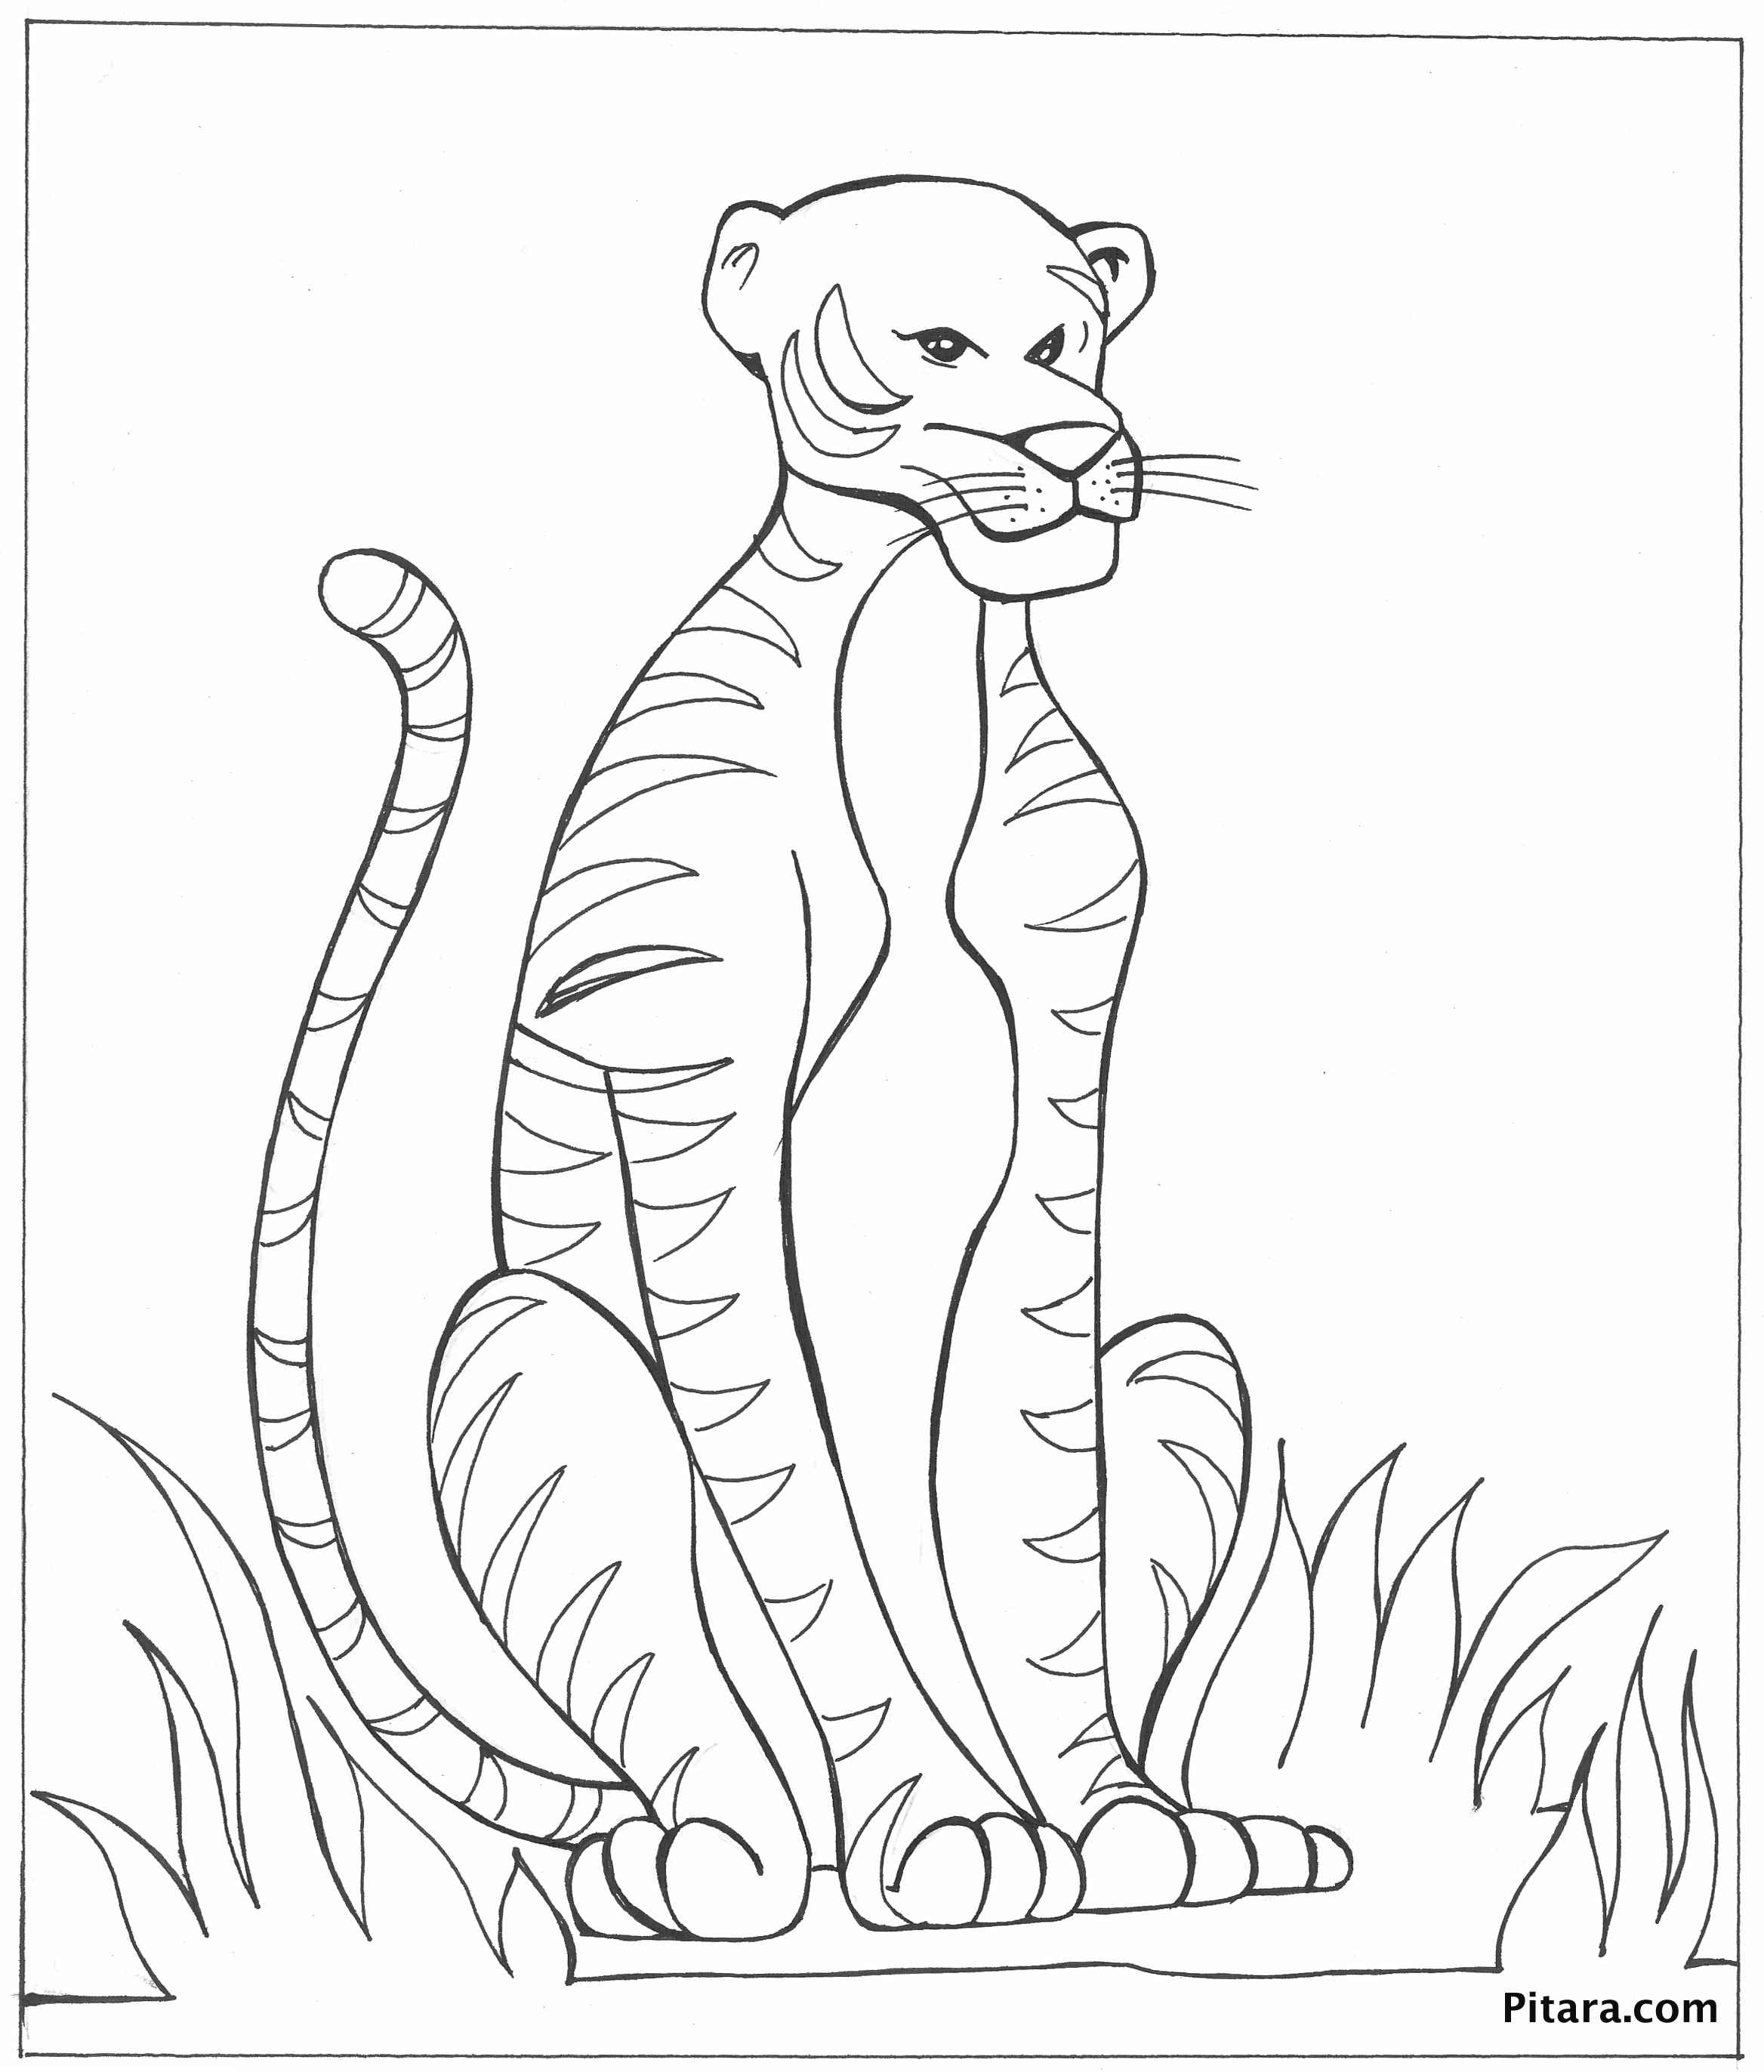 Bức tranh màu với một con hổ với khuôn mặt khá xấu xí